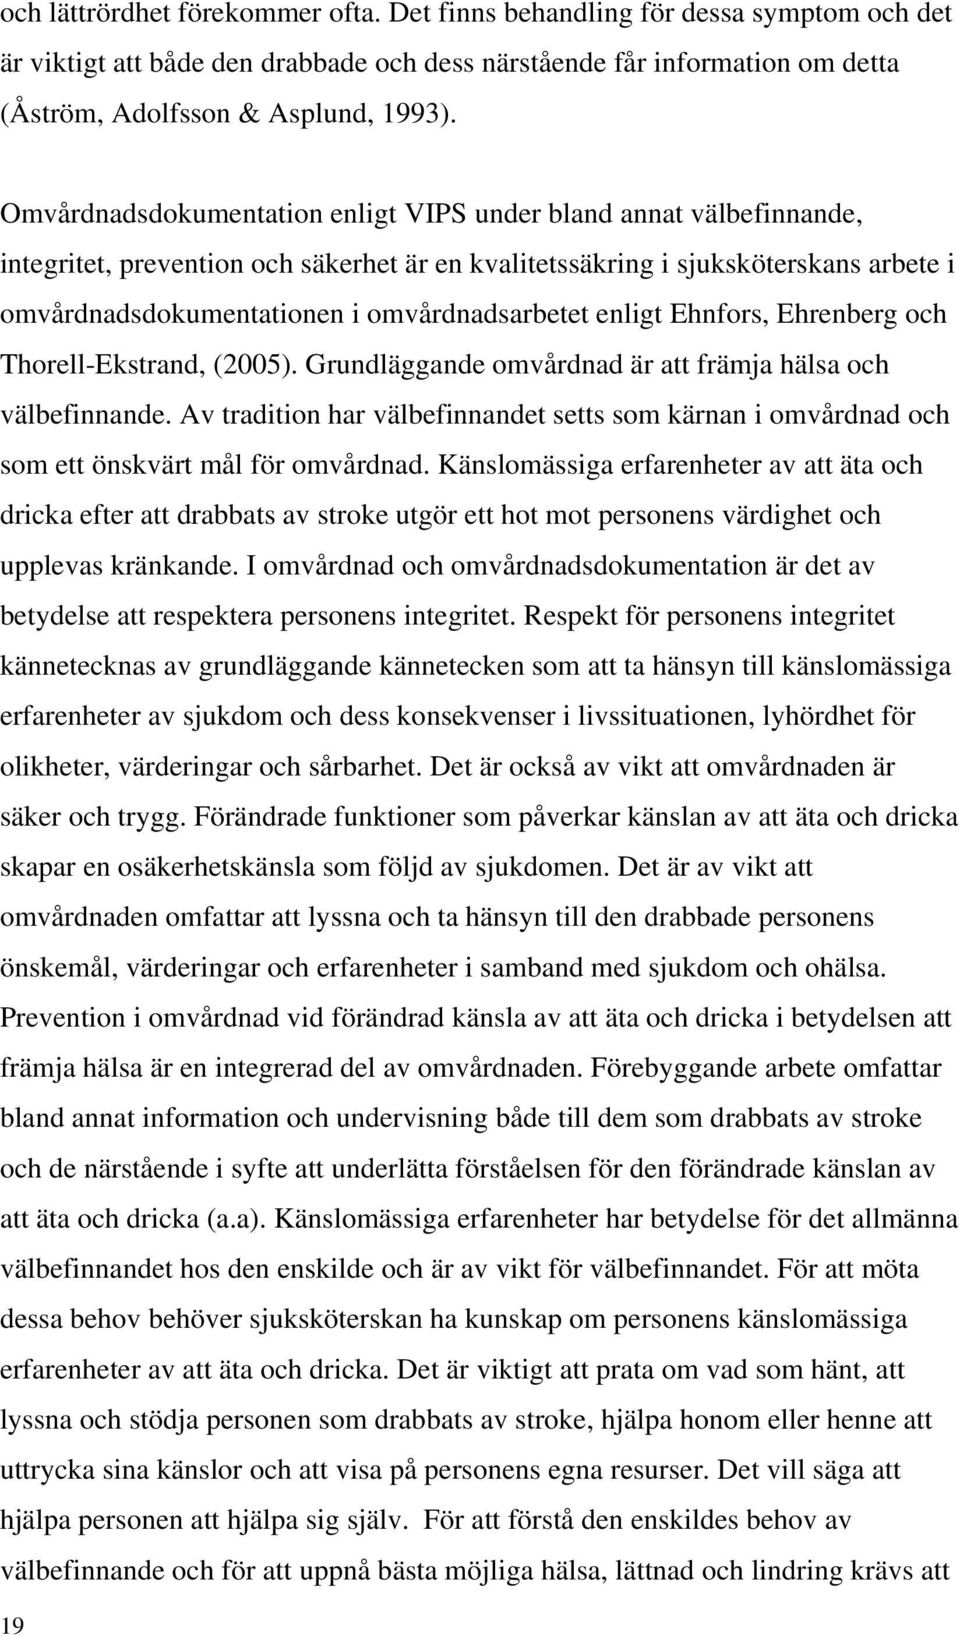 omvårdnadsarbetet enligt Ehnfors, Ehrenberg och Thorell-Ekstrand, (2005). Grundläggande omvårdnad är att främja hälsa och välbefinnande.